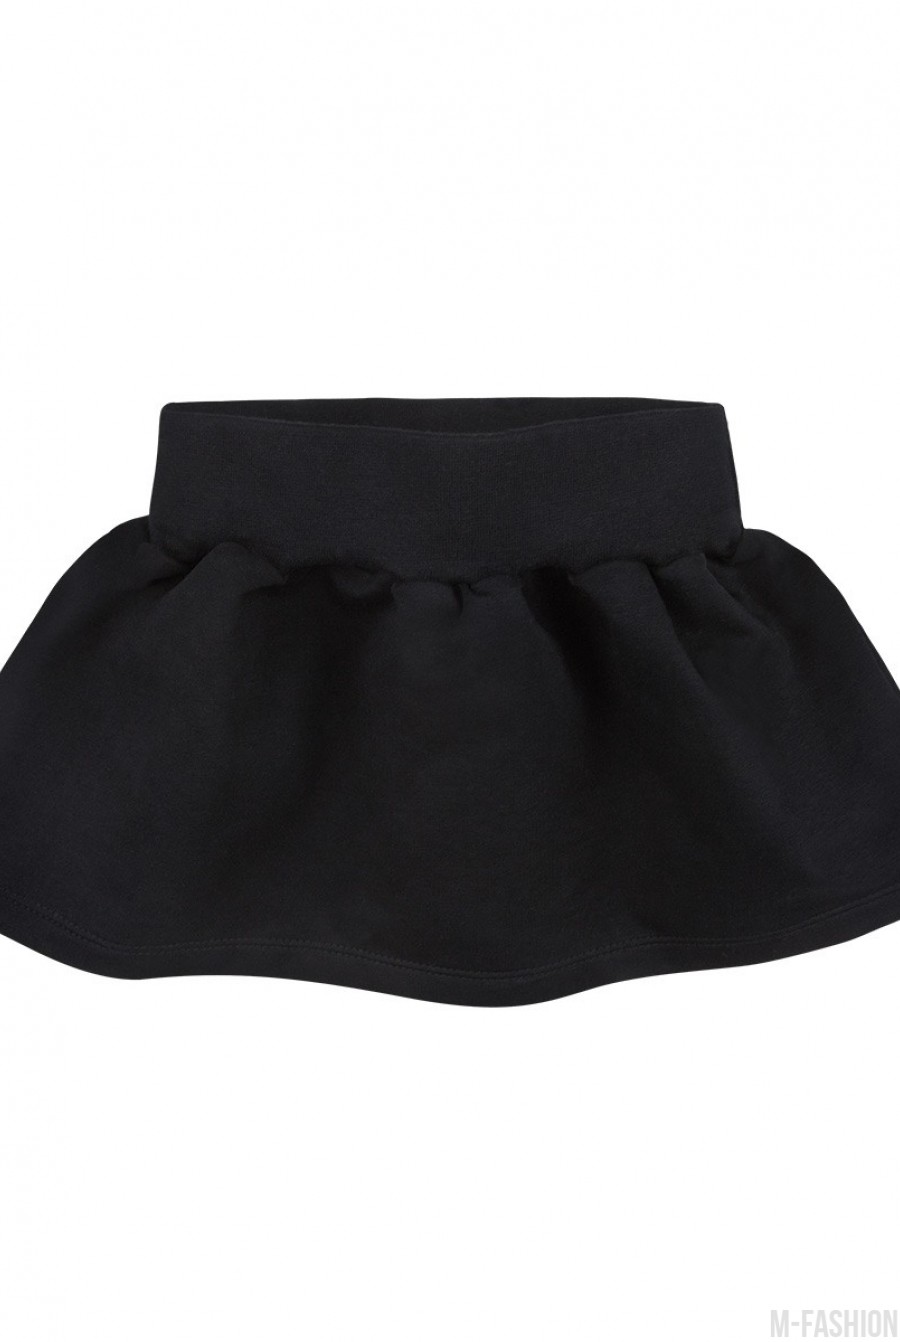 Черная юбка-колокол из футера на резинке - Фото 1